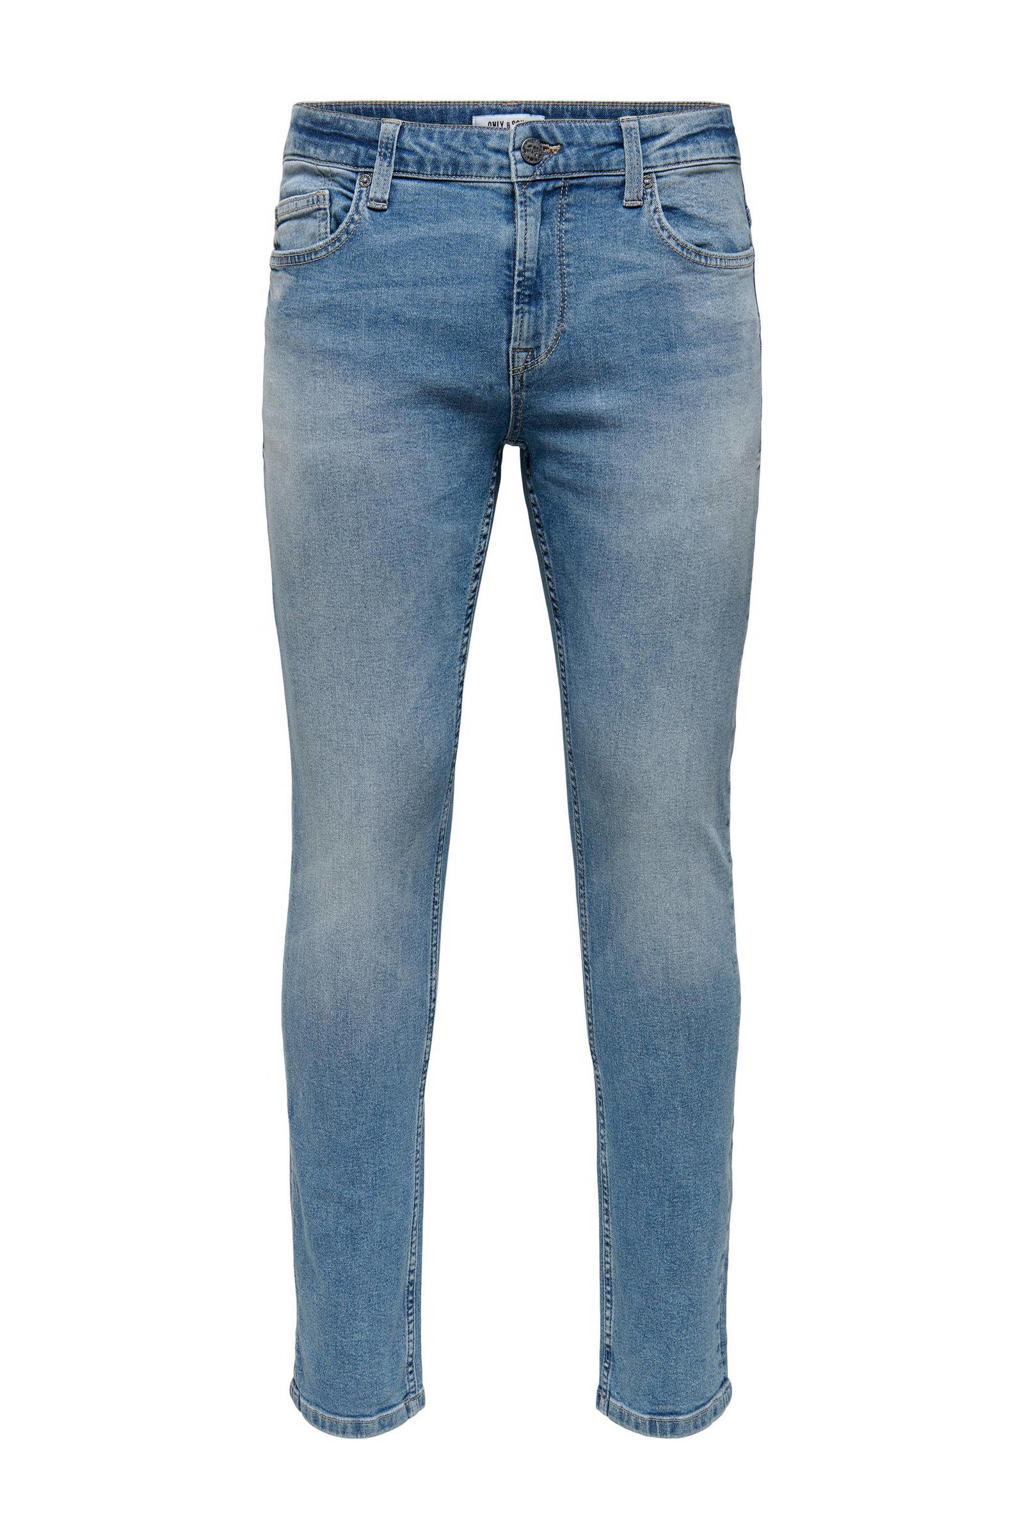 ONLY & SONS slim fit jeans ONSLOOM 2371 blue denim